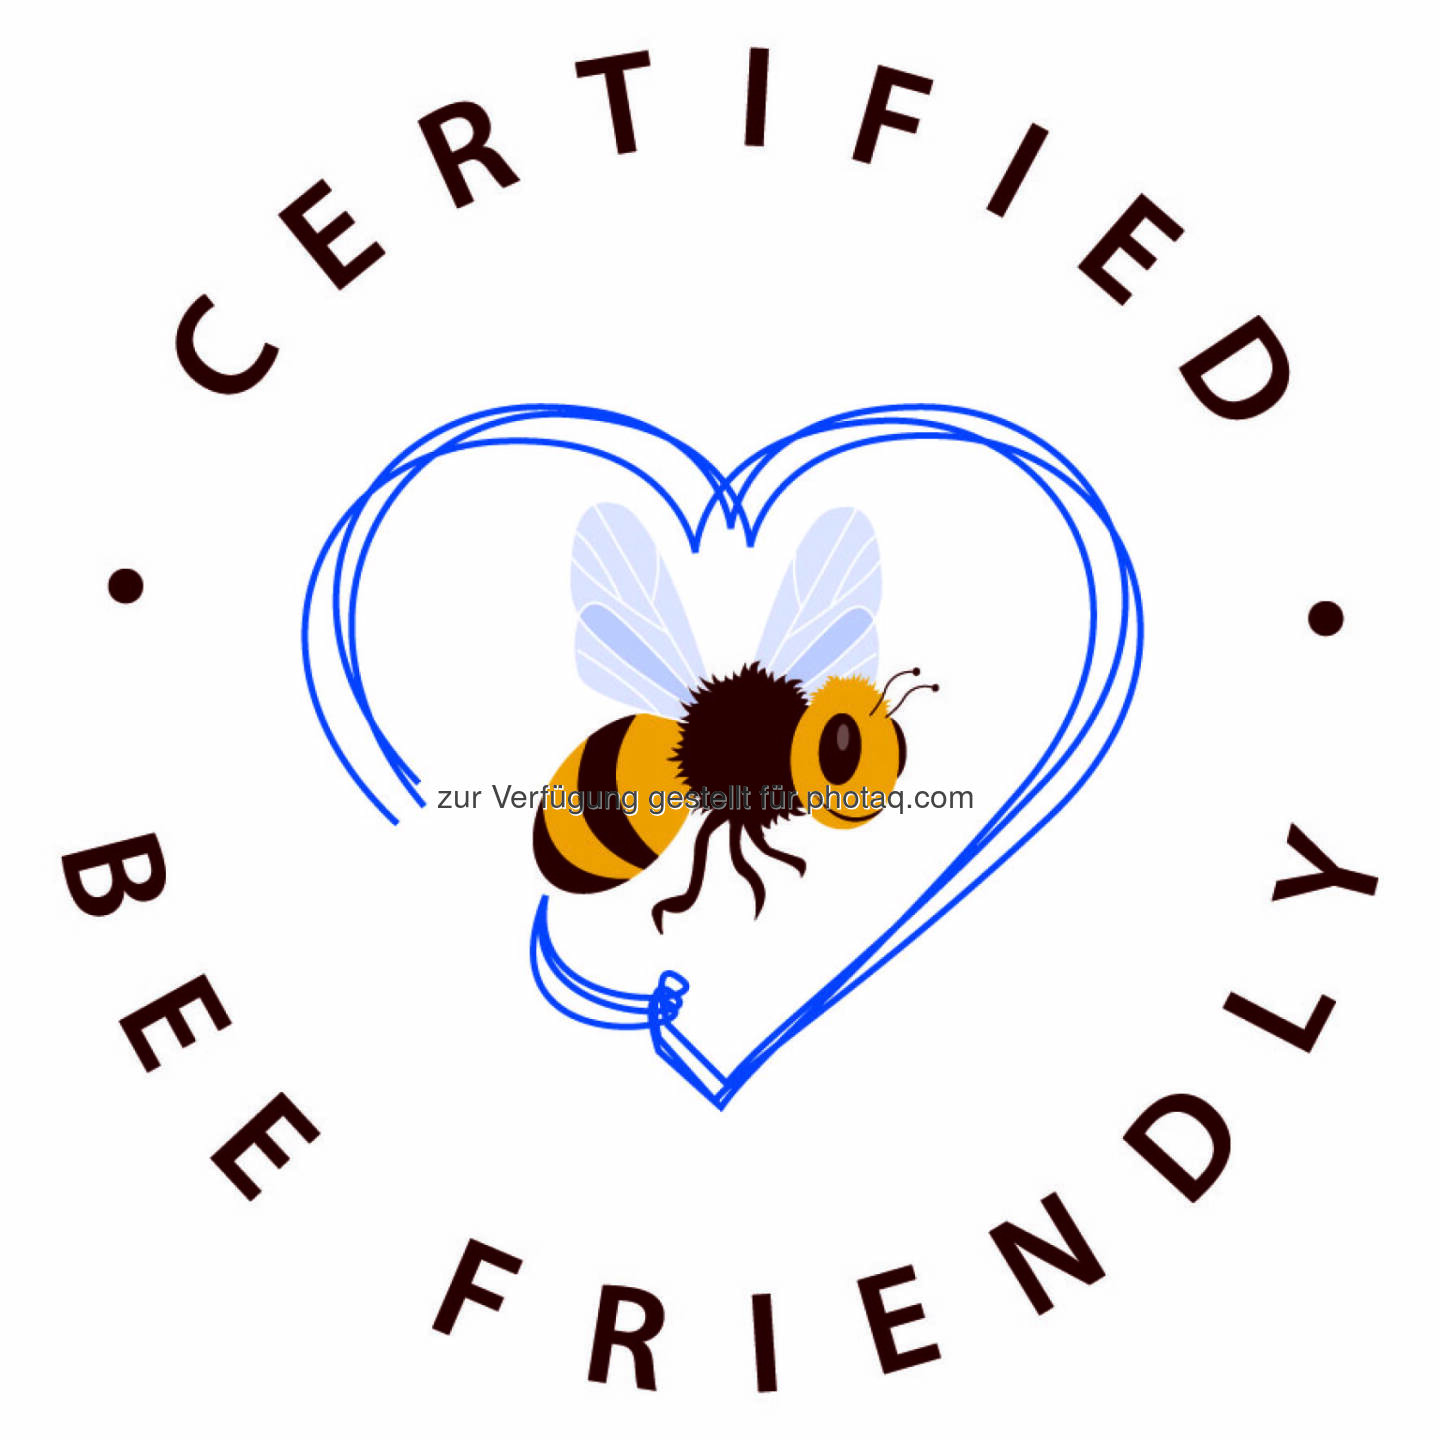 Bienen - Global 2000 Bienenschutzkonferenz: Das Certified Bee Friendly Label (c) Global 2000